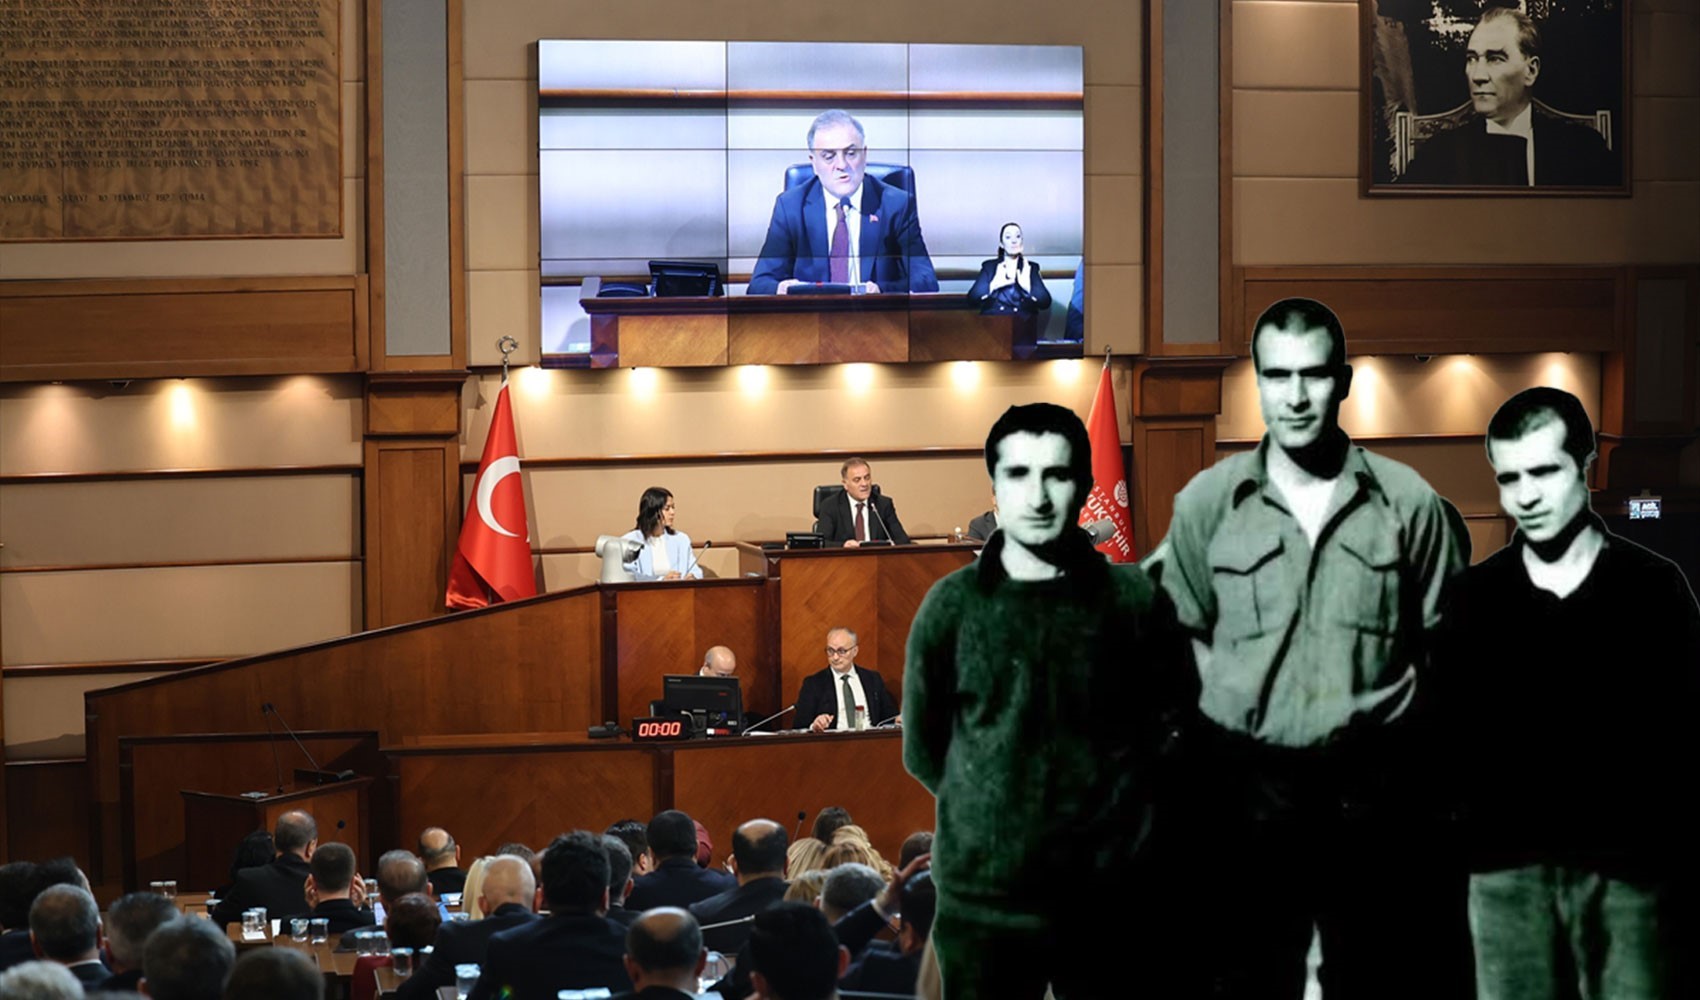 İBB Meclisi'nde Deniz Gezmiş tartışması: MHP ‘Anılamaz’ dedi, AKP, CHP’ye yüklendi